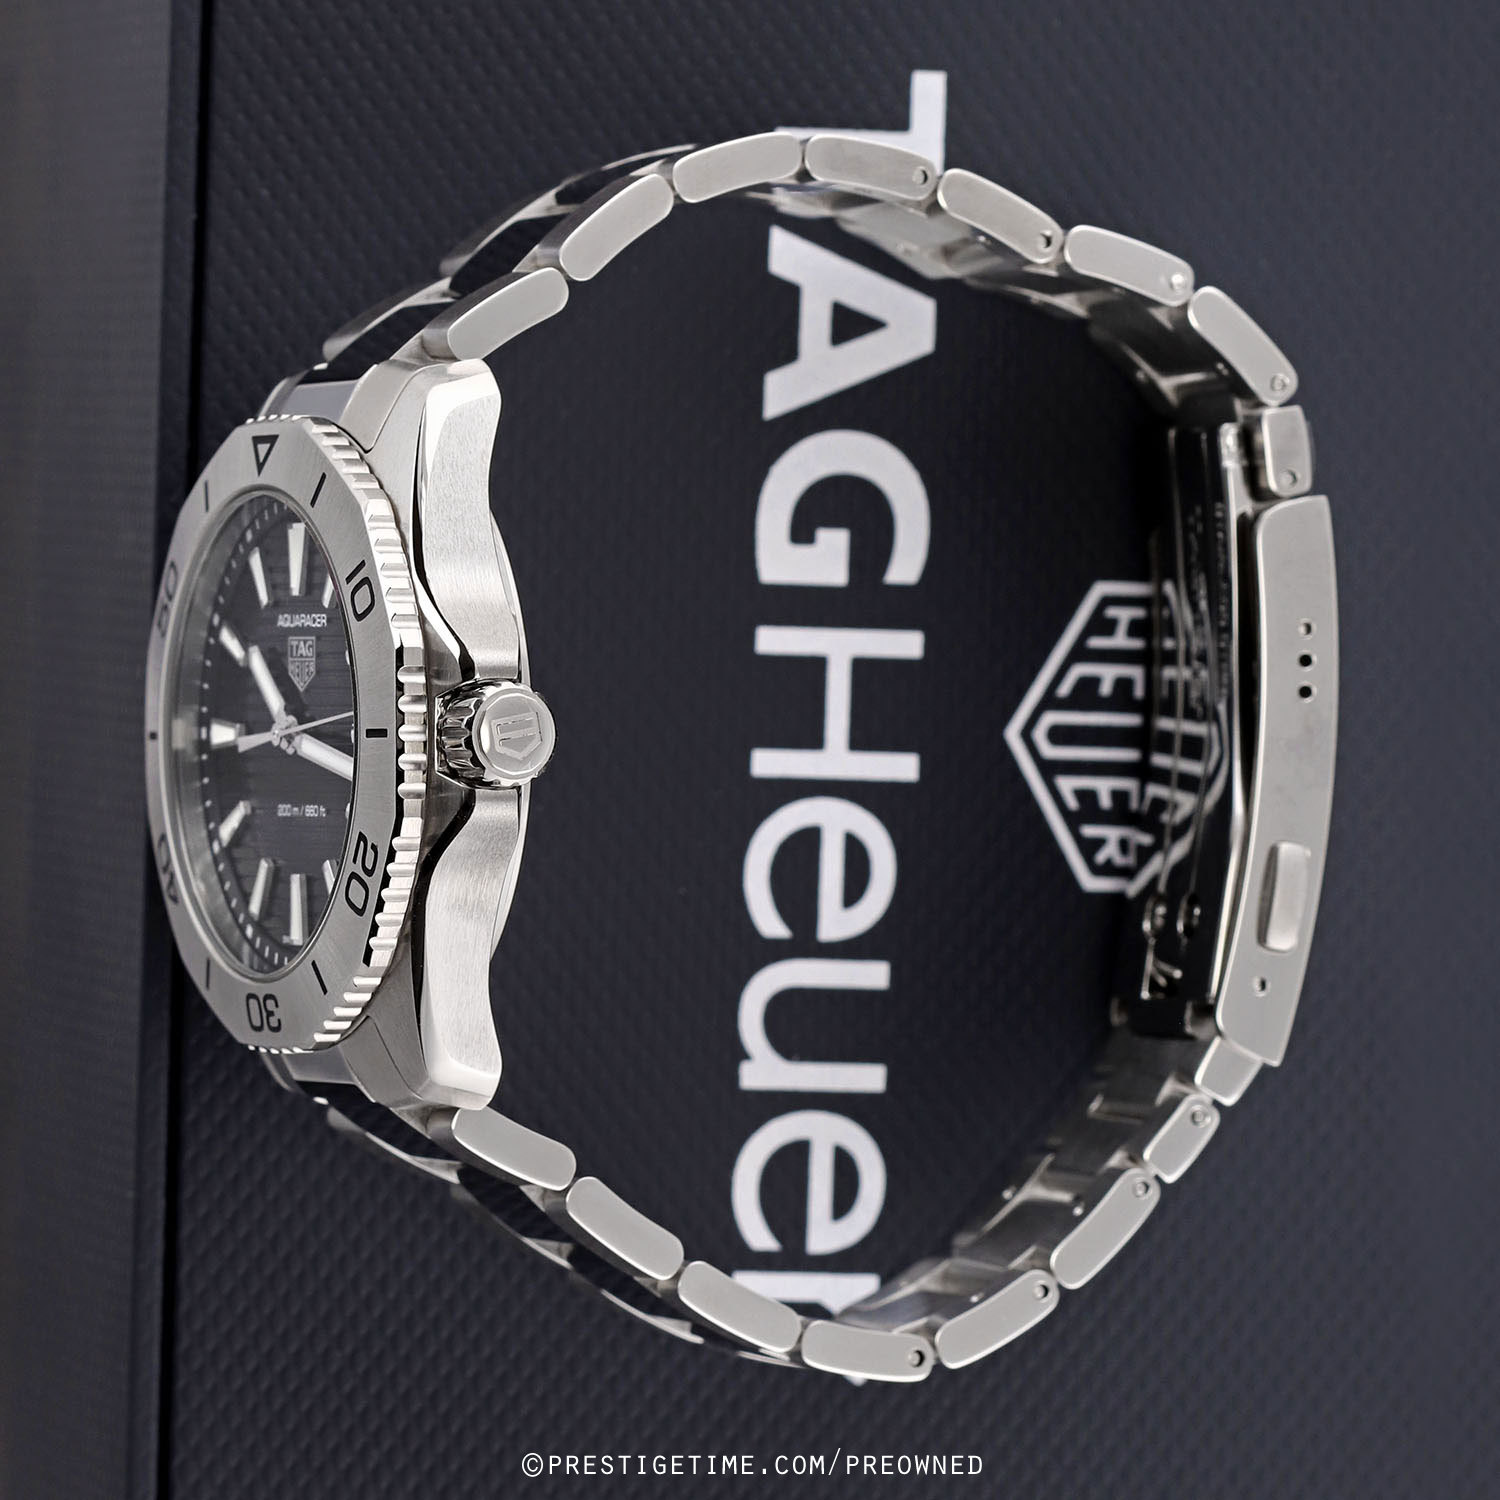 Tag Heuer Aquaracer Quartz Black Dial Men's Watch WBP1110.BA0627  7612533160835 - Watches, Aquaracer - Jomashop